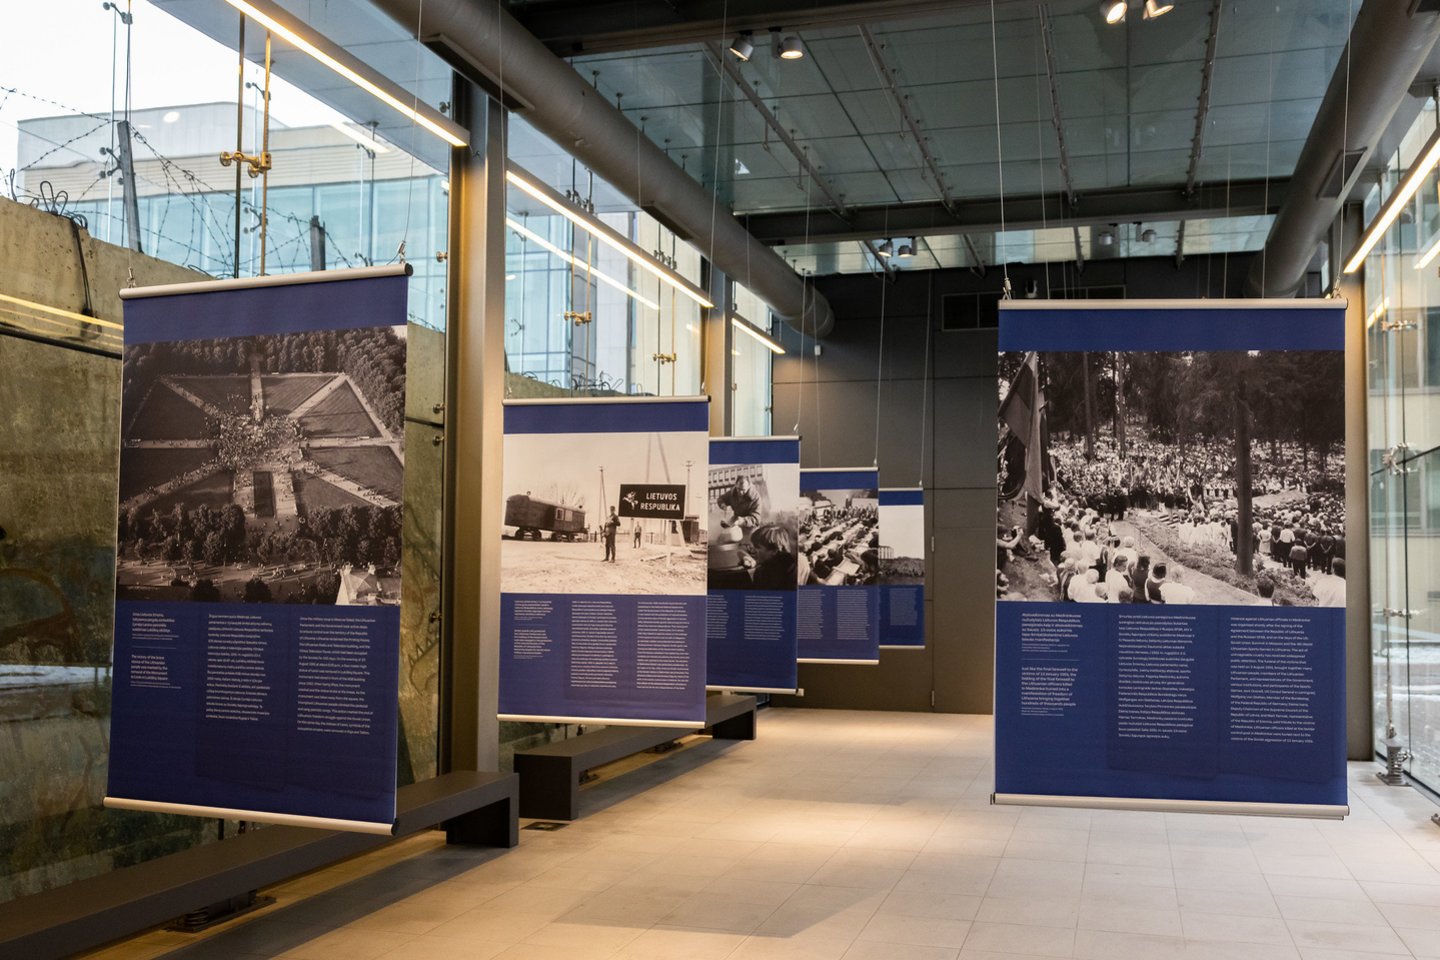 Atnaujintame memoriale Sausio 13-osios aukoms atminti – paroda „PRISIEKĘ NESITRAUKTI: Lietuvos laikysena 1991 m. sovietų agresijos akivaizdoje“.<br>Pridedamos Seimo kanceliarijos (O.Posaškovos) nuotr.